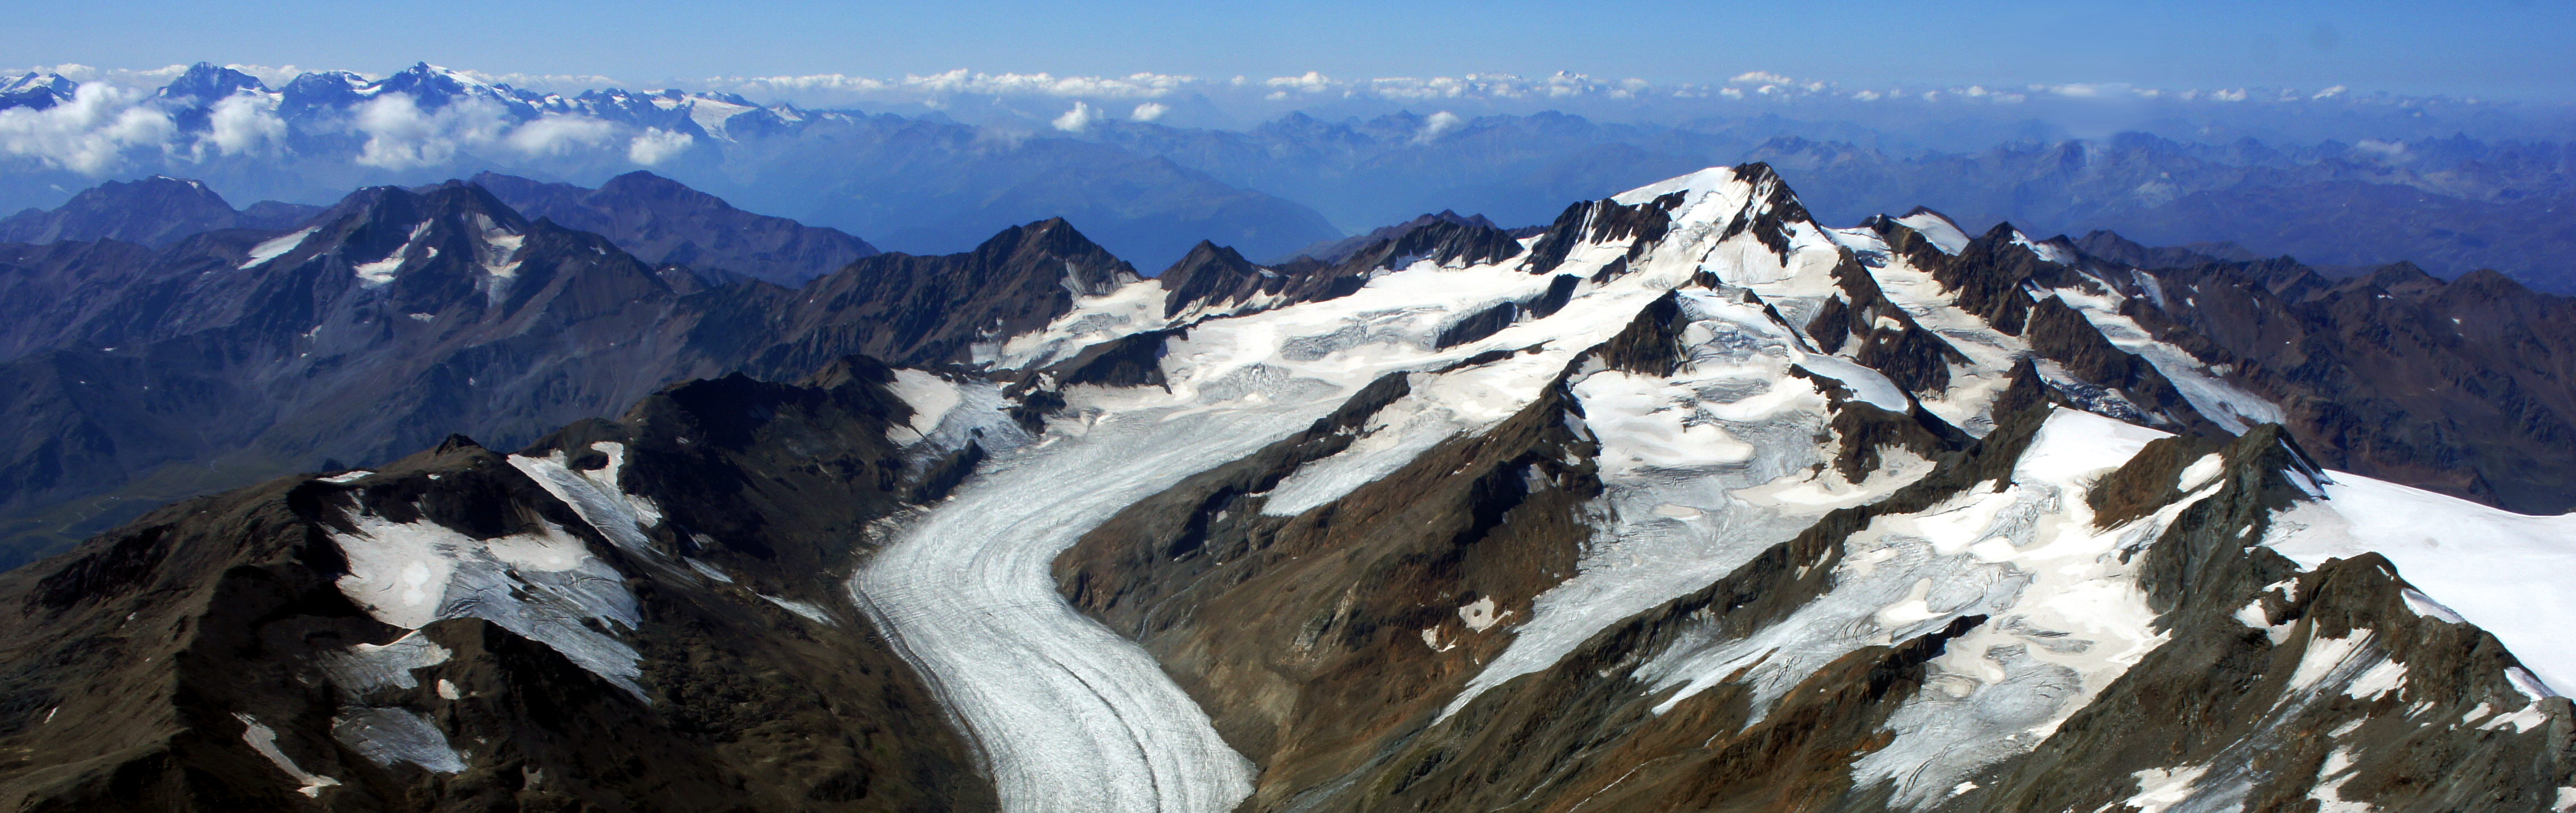 Los efectos del calentamiento global son patentes en el glaciar Hintereisferner, en el Tirol (Austria): sus depósitos de nieve ya no son suficientes para mantener el equilibrio del glaciar. Foto: Institute of Atmospheric and Cryospheric Sciences.